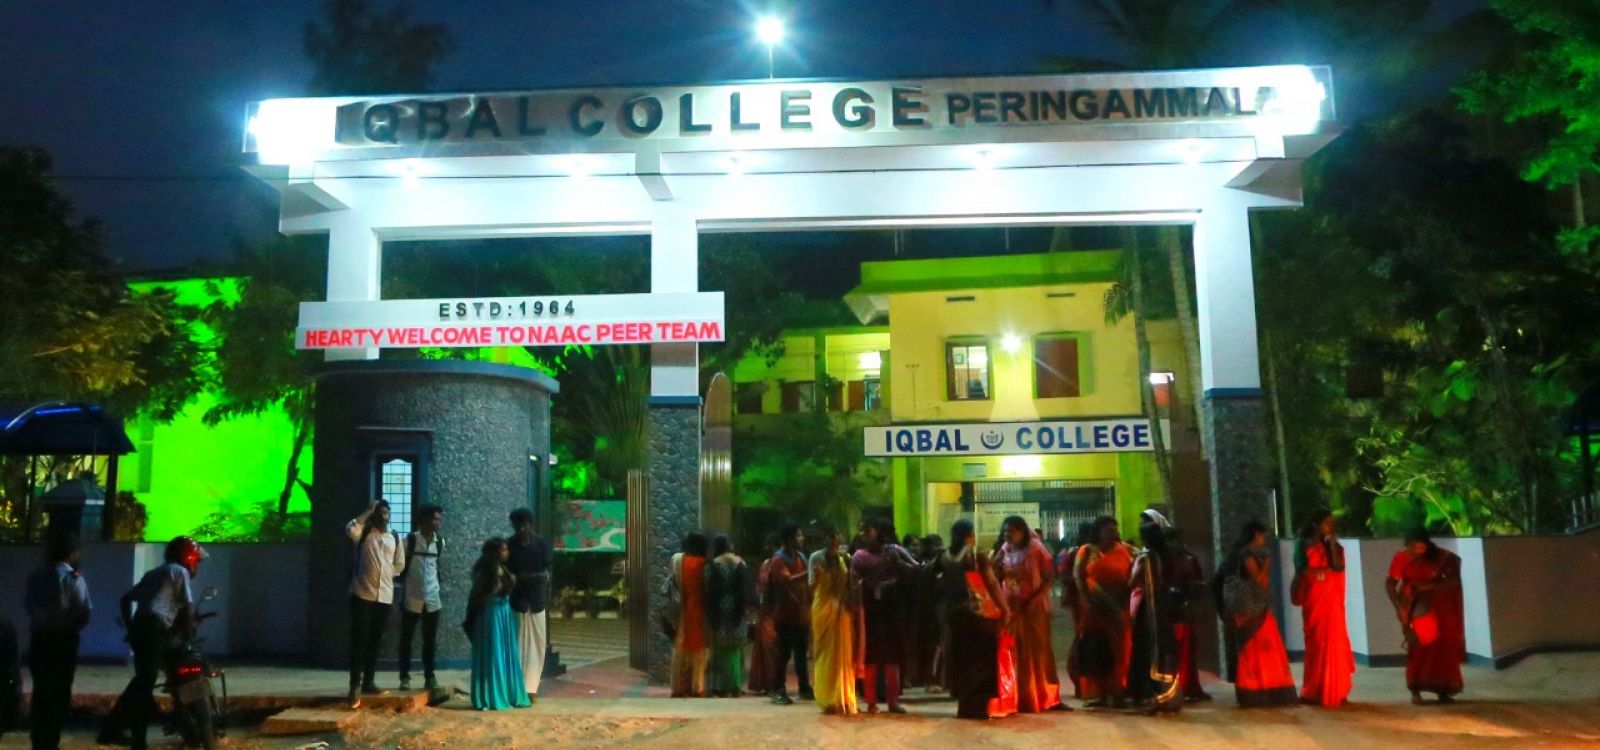 Iqbal College Peringammala, Thiruvananthapuram Image